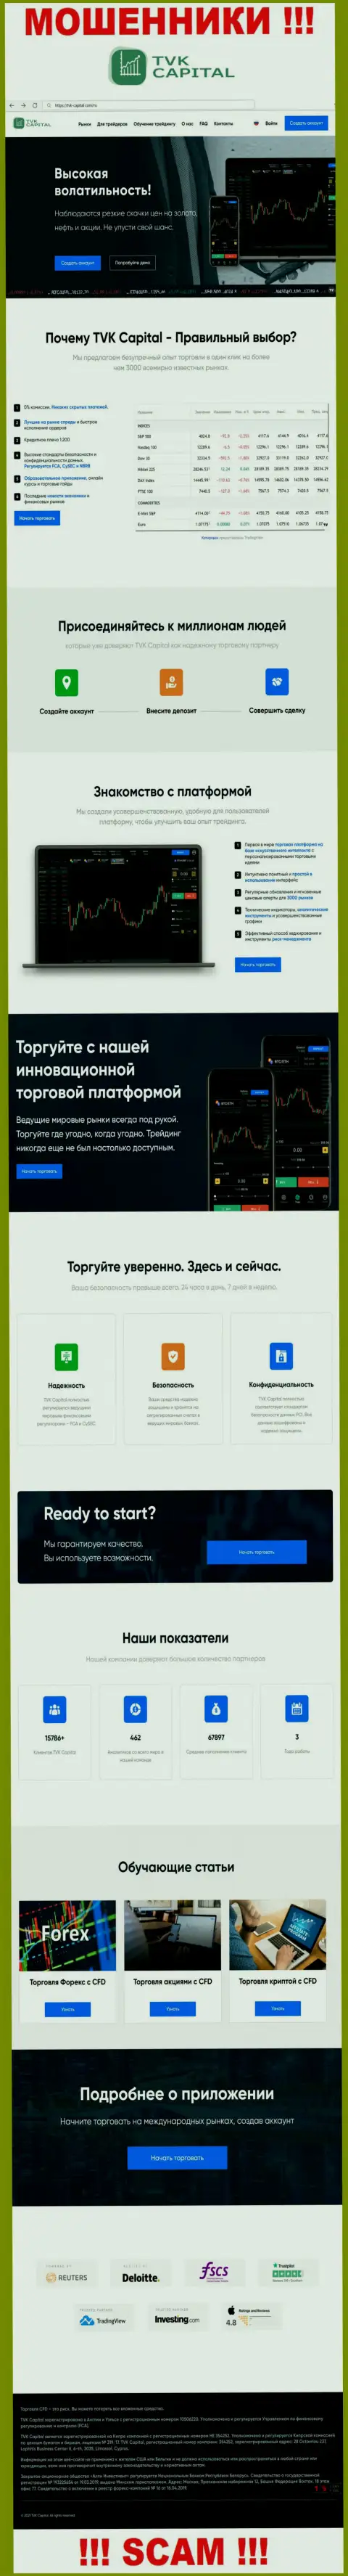 TVKCapital Com - информационный портал организации TVK Capital, обычная страница мошенников